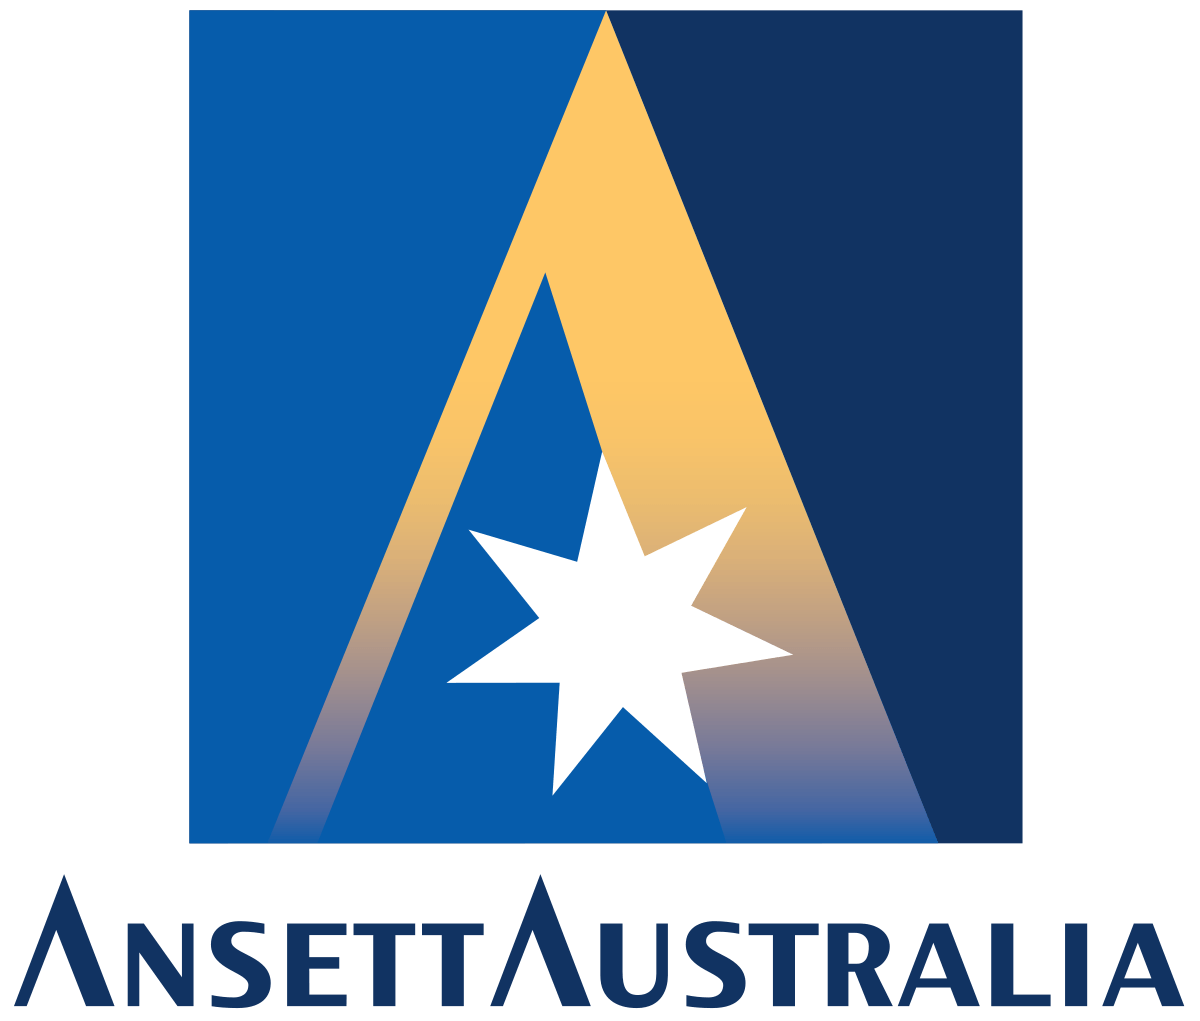 Famous Airline Logo - Ansett Australia